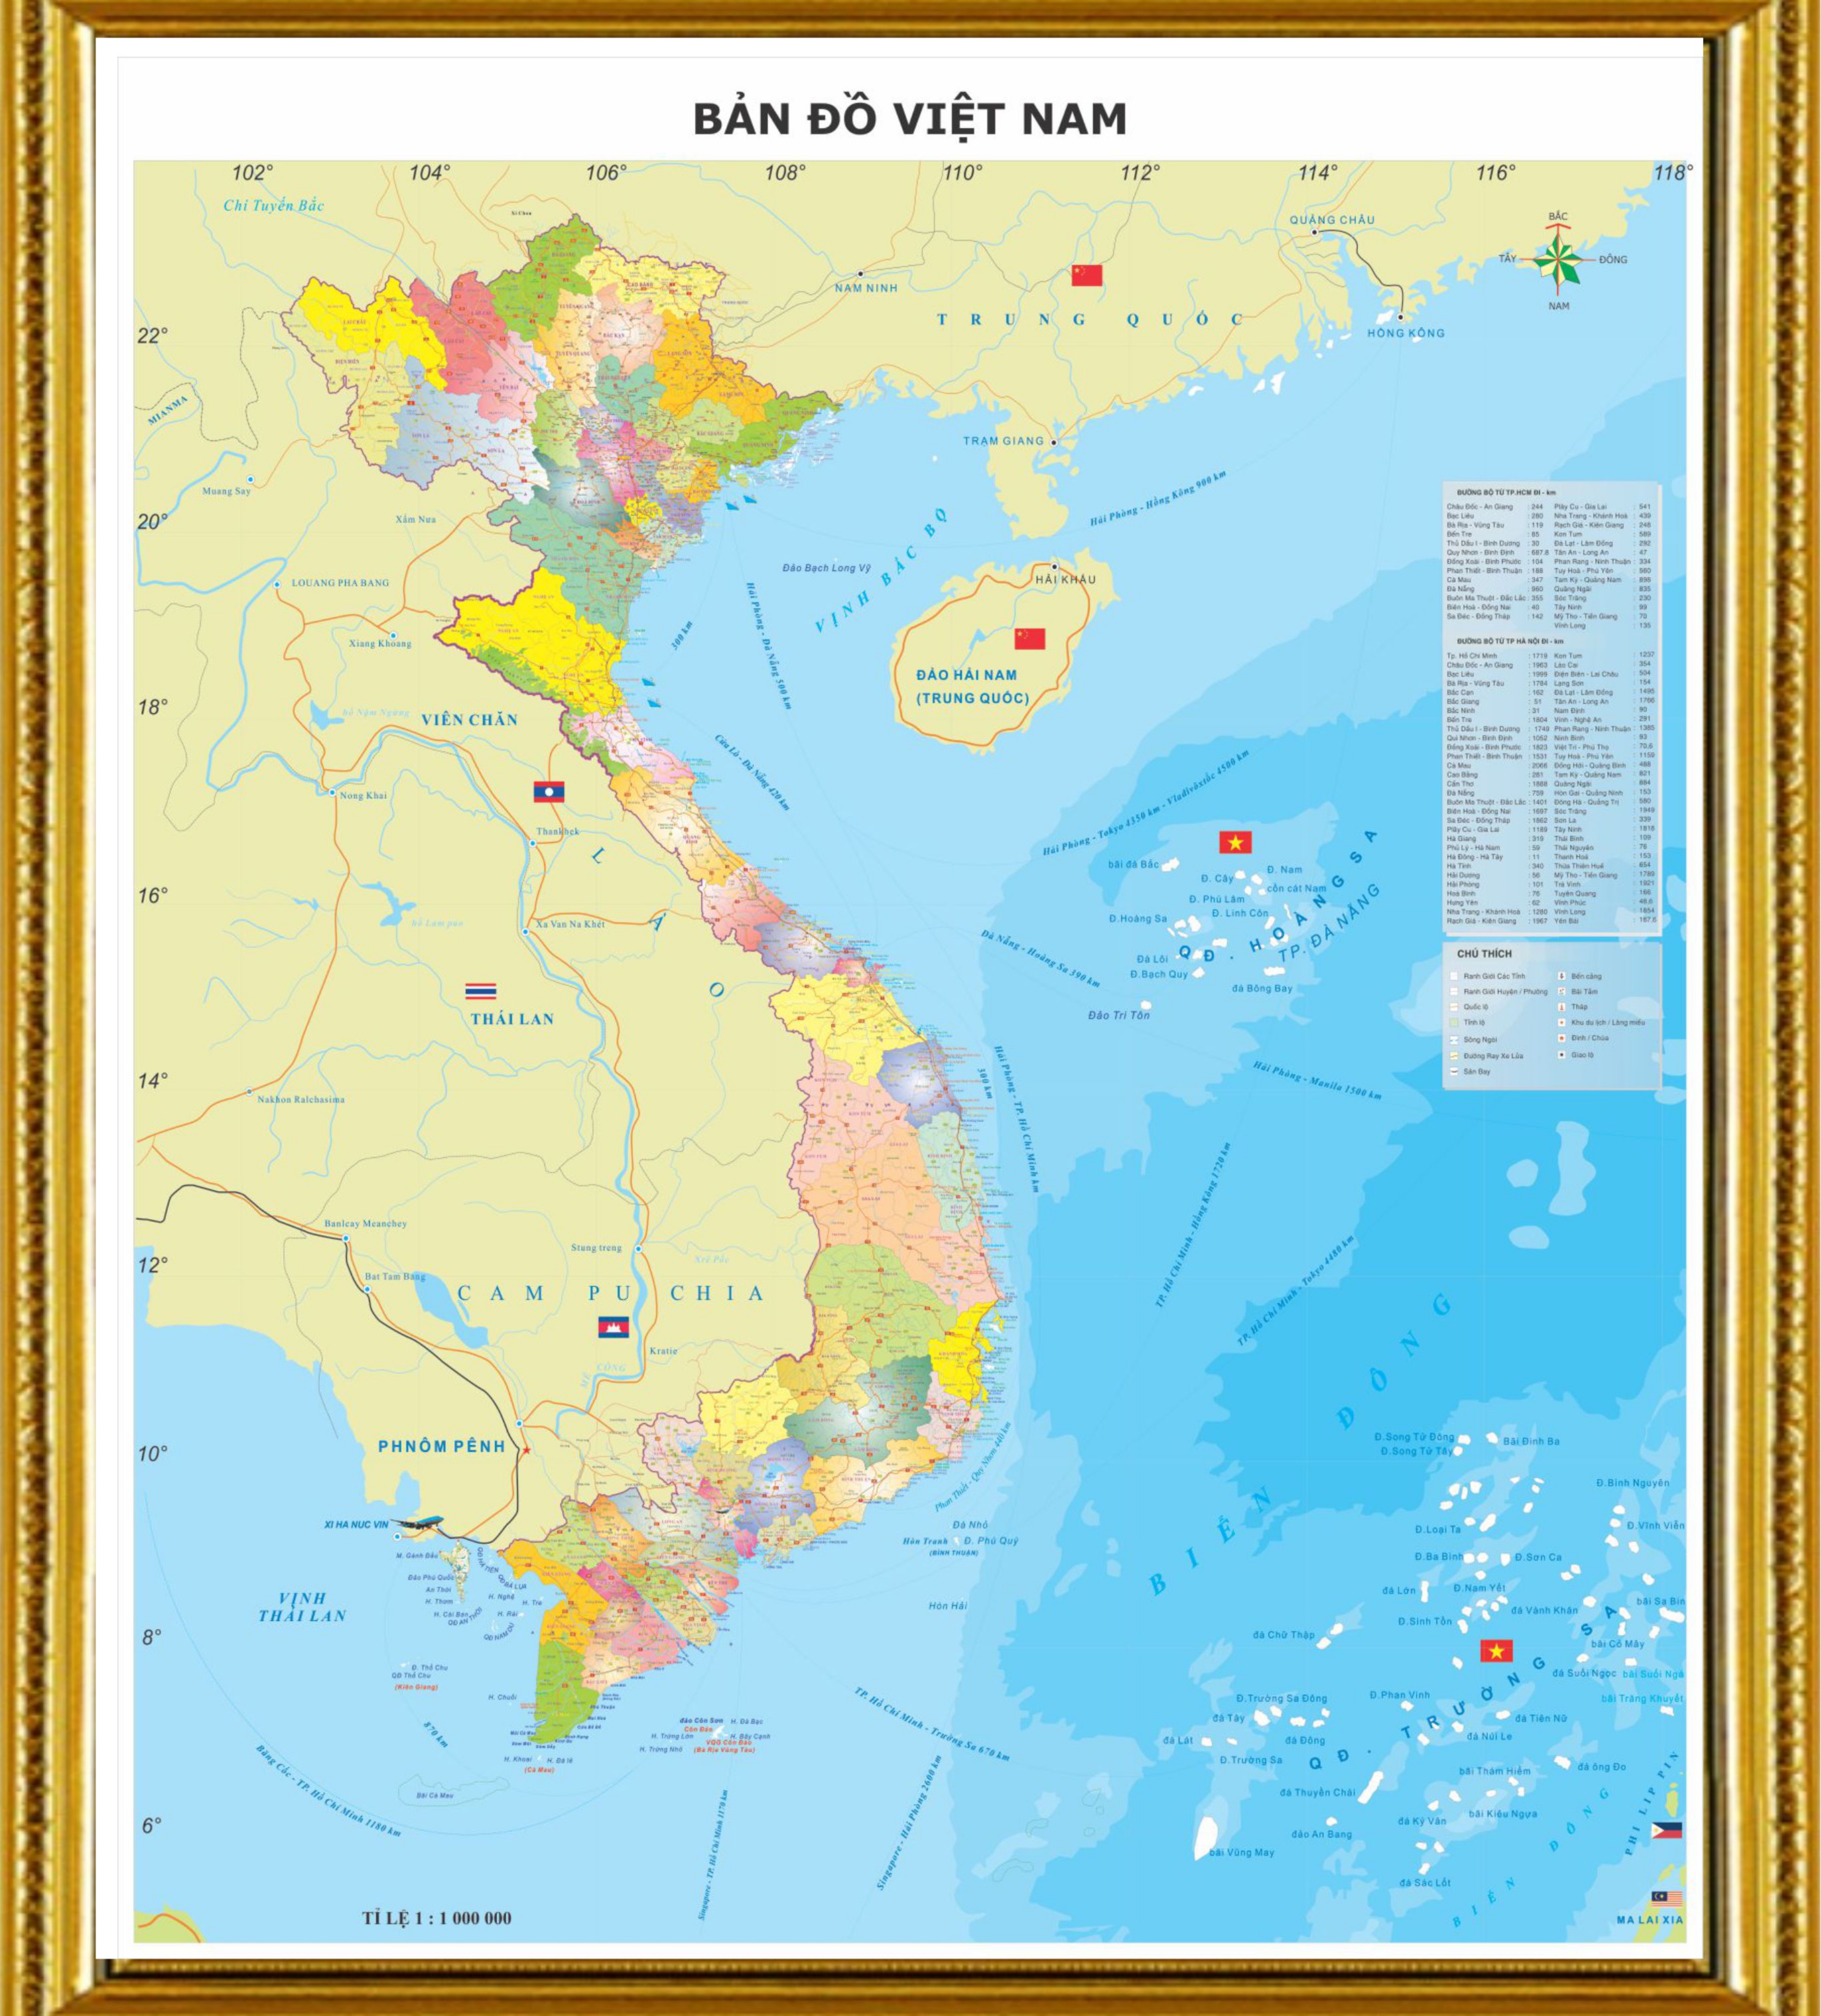 Tải xuống bản đồ hành chính các tỉnh Việt Nam 2024 và khám phá đất nước Việt Nam như chưa từng có. Bản đồ được cập nhật với thông tin mới nhất về các tỉnh thành phố và địa phương. Mang lại cho người dùng trải nghiệm tuyệt đỉnh về khám phá và hiểu biết về đất nước.